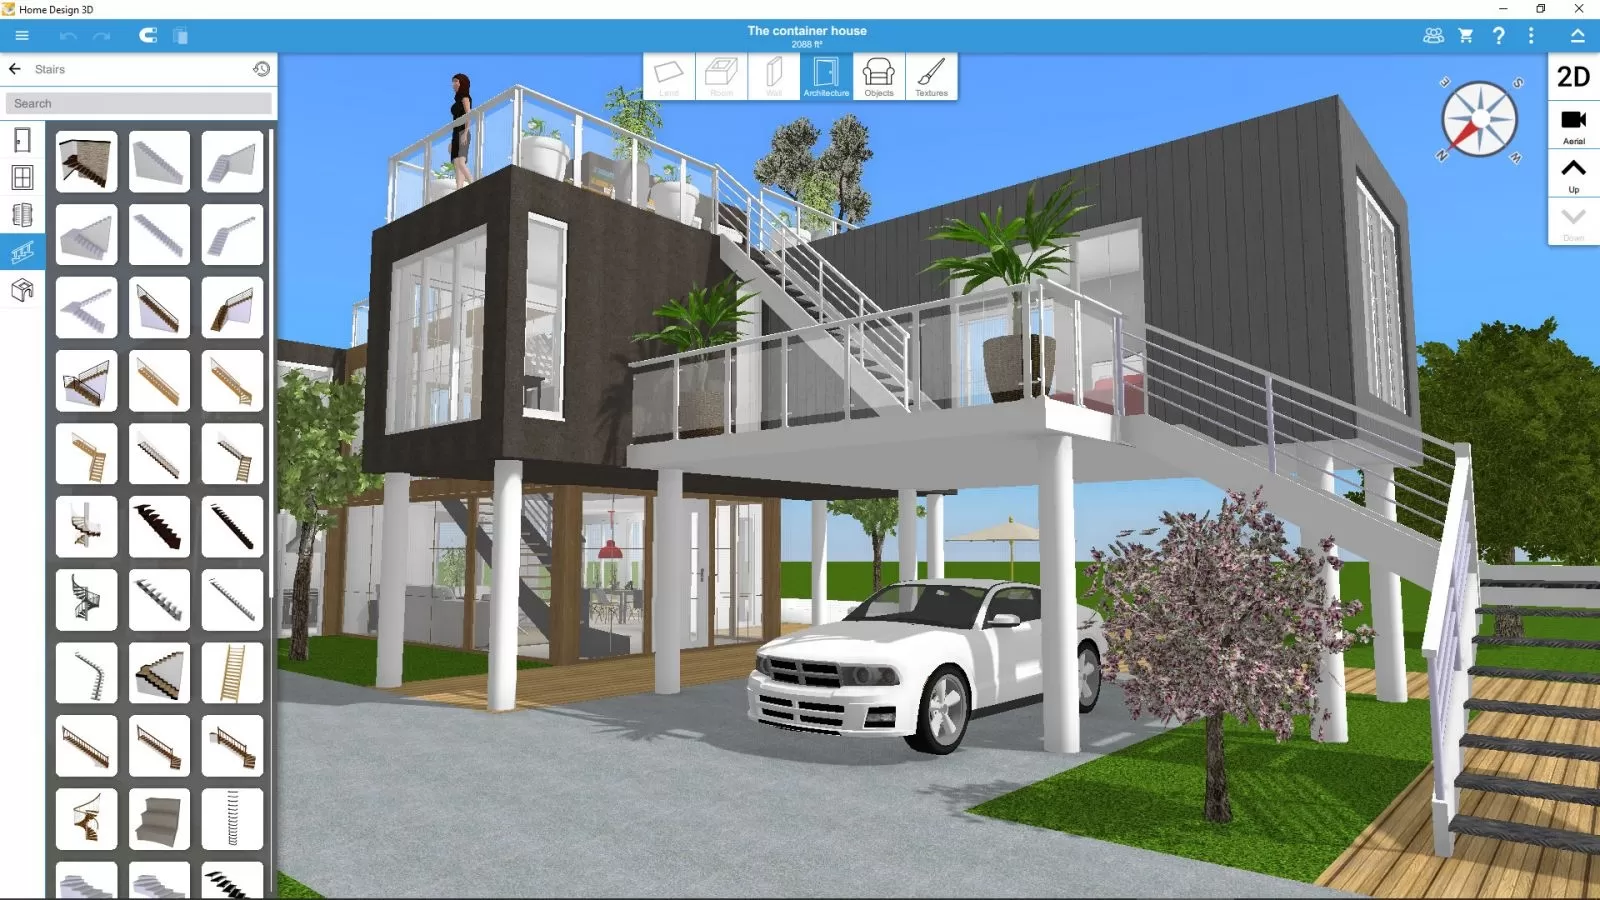 Home Design 3D cho phép chỉnh sửa nhiều đối tượng cùng lúc